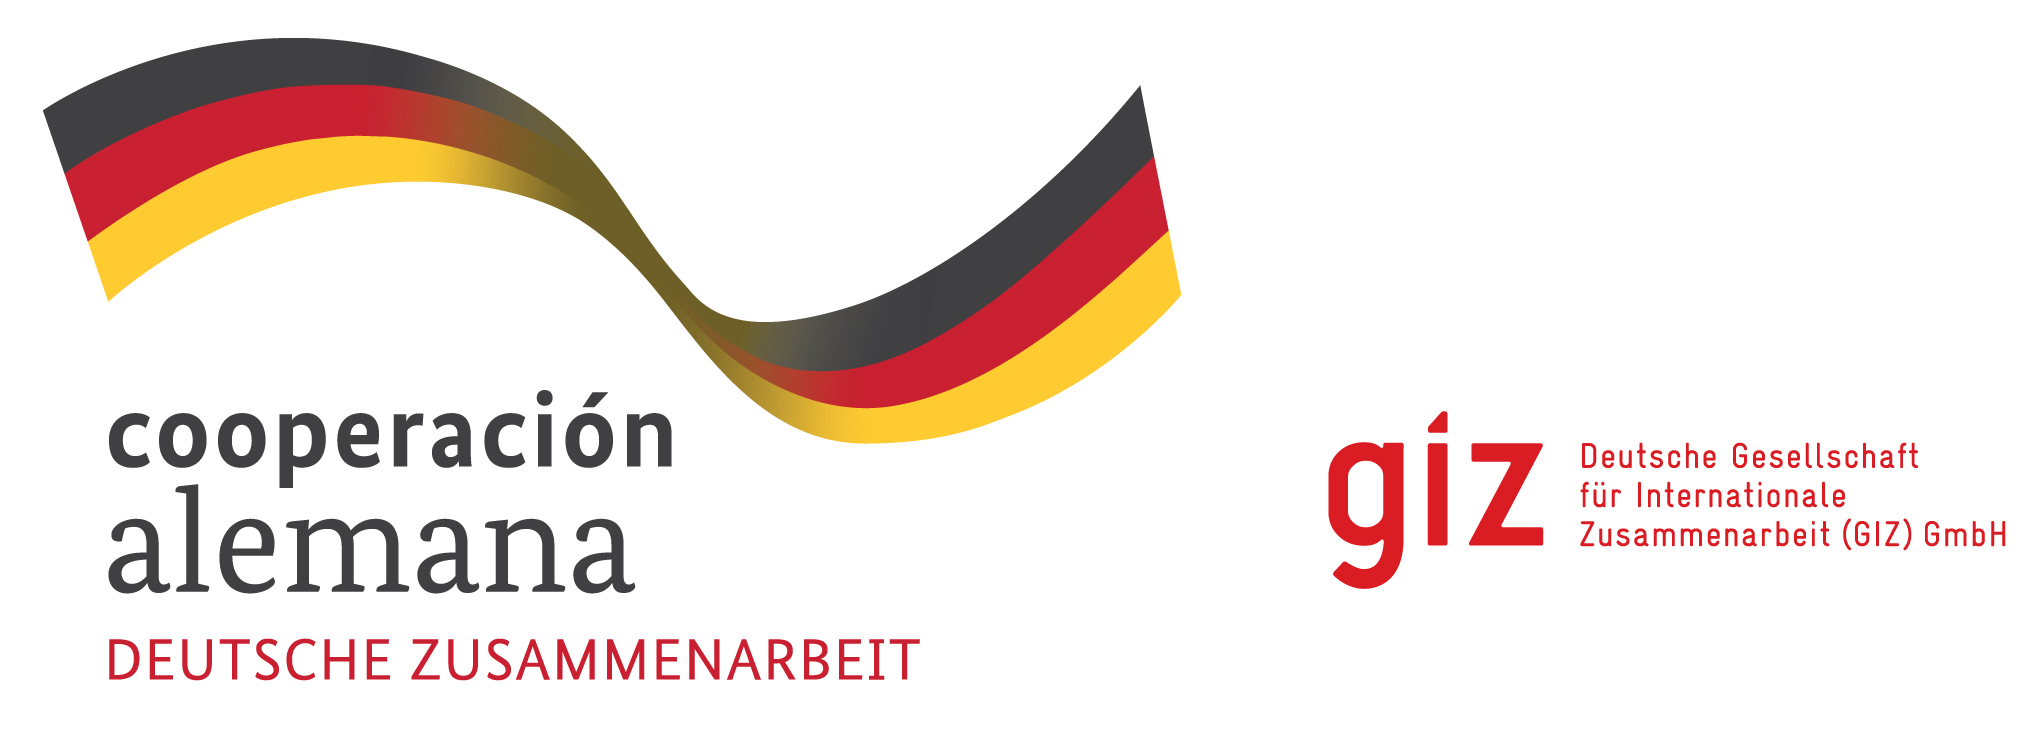 cooperacion alemana deutsche zusammenarbeit